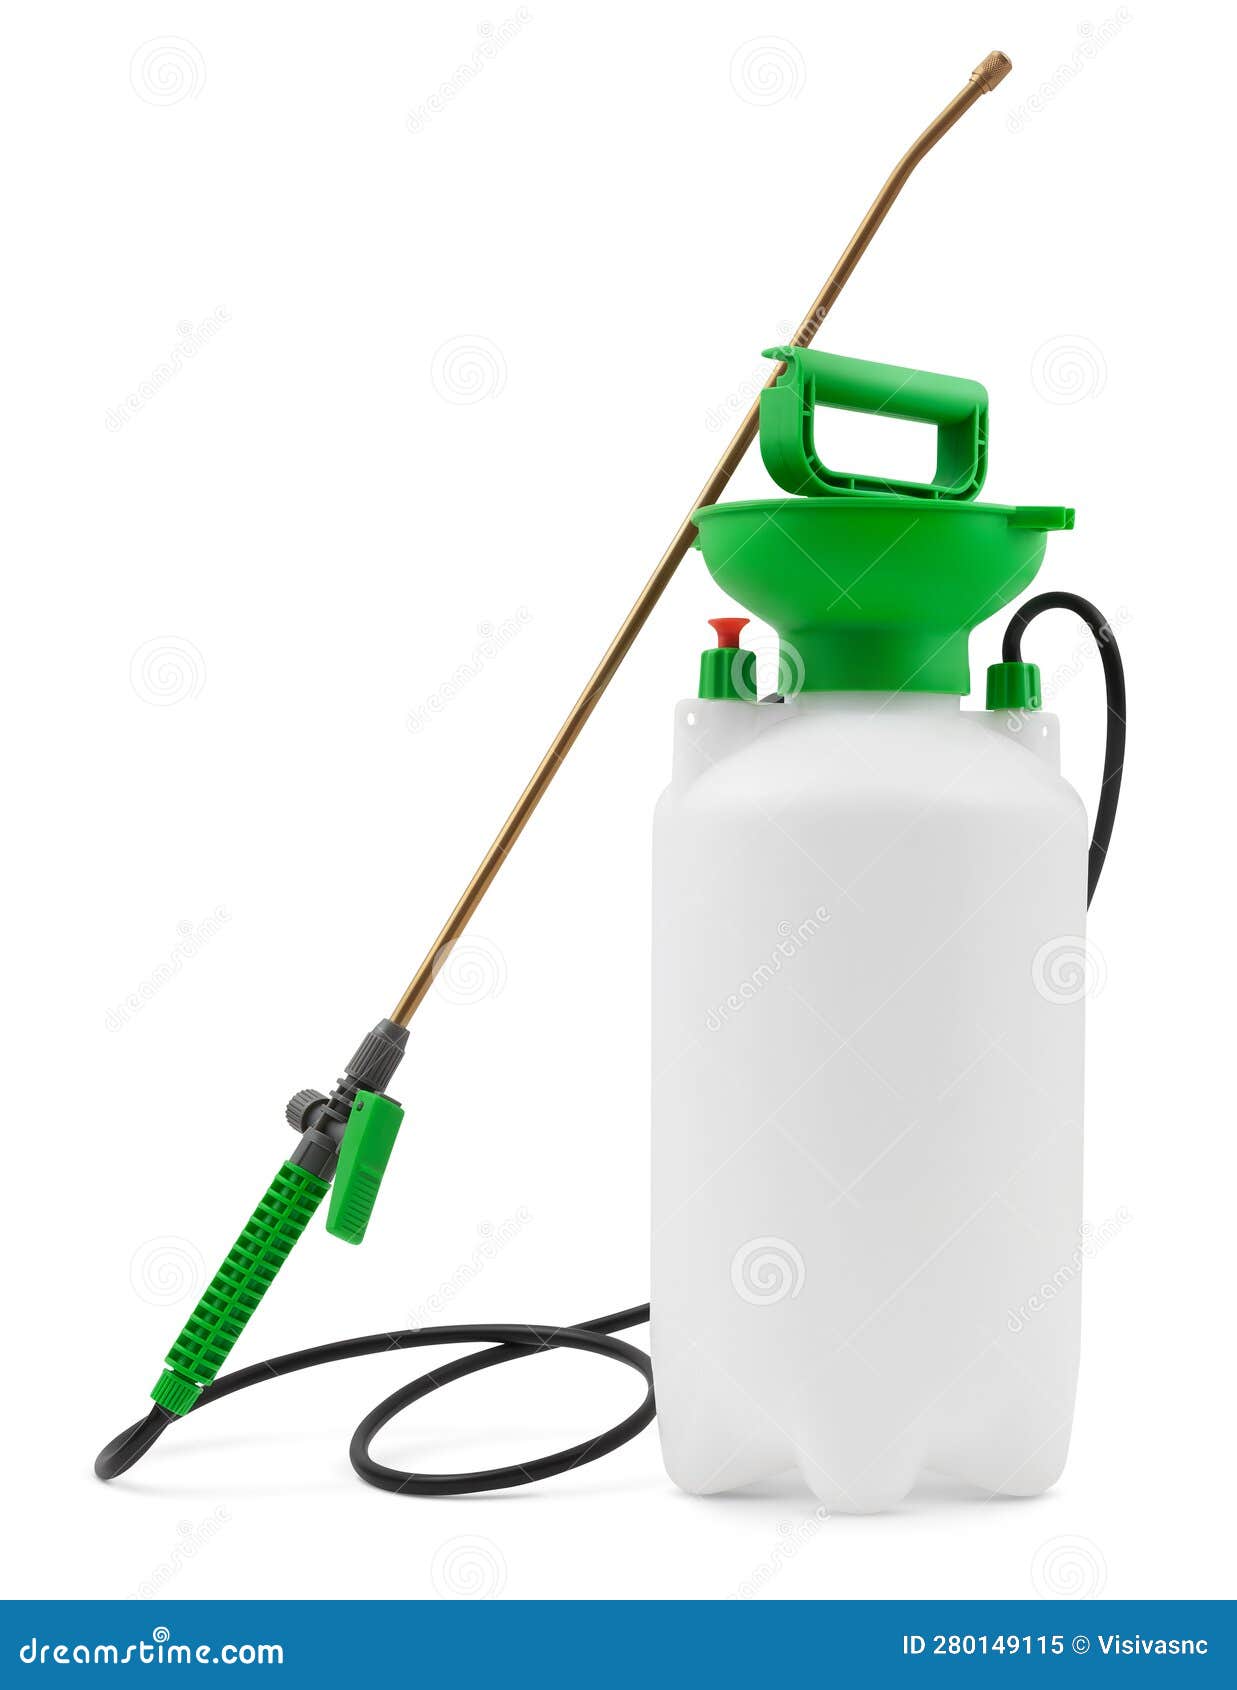 gallon portable garden pump pressure sprayer, pressurized lawn and garden water spray bottle for spraying plants. gardening work